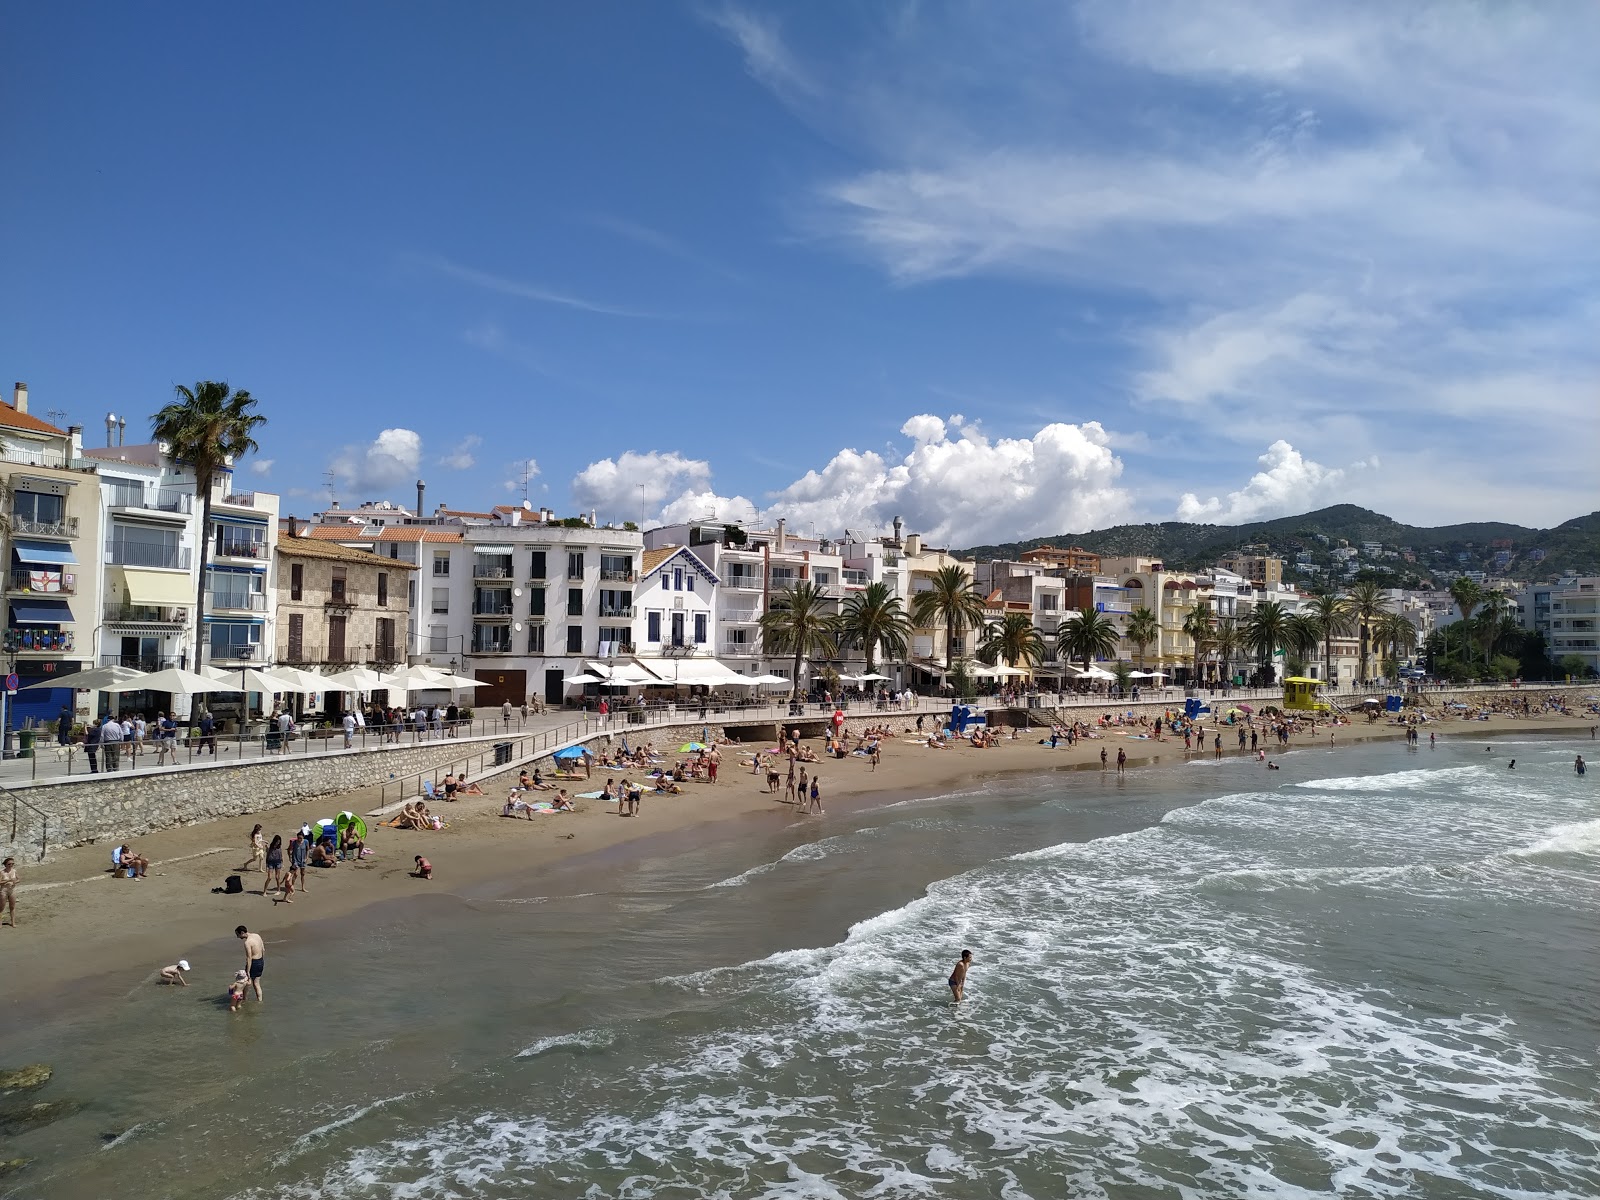 Fotografie cu Platja de Sant Sebastia cu o suprafață de nisip maro